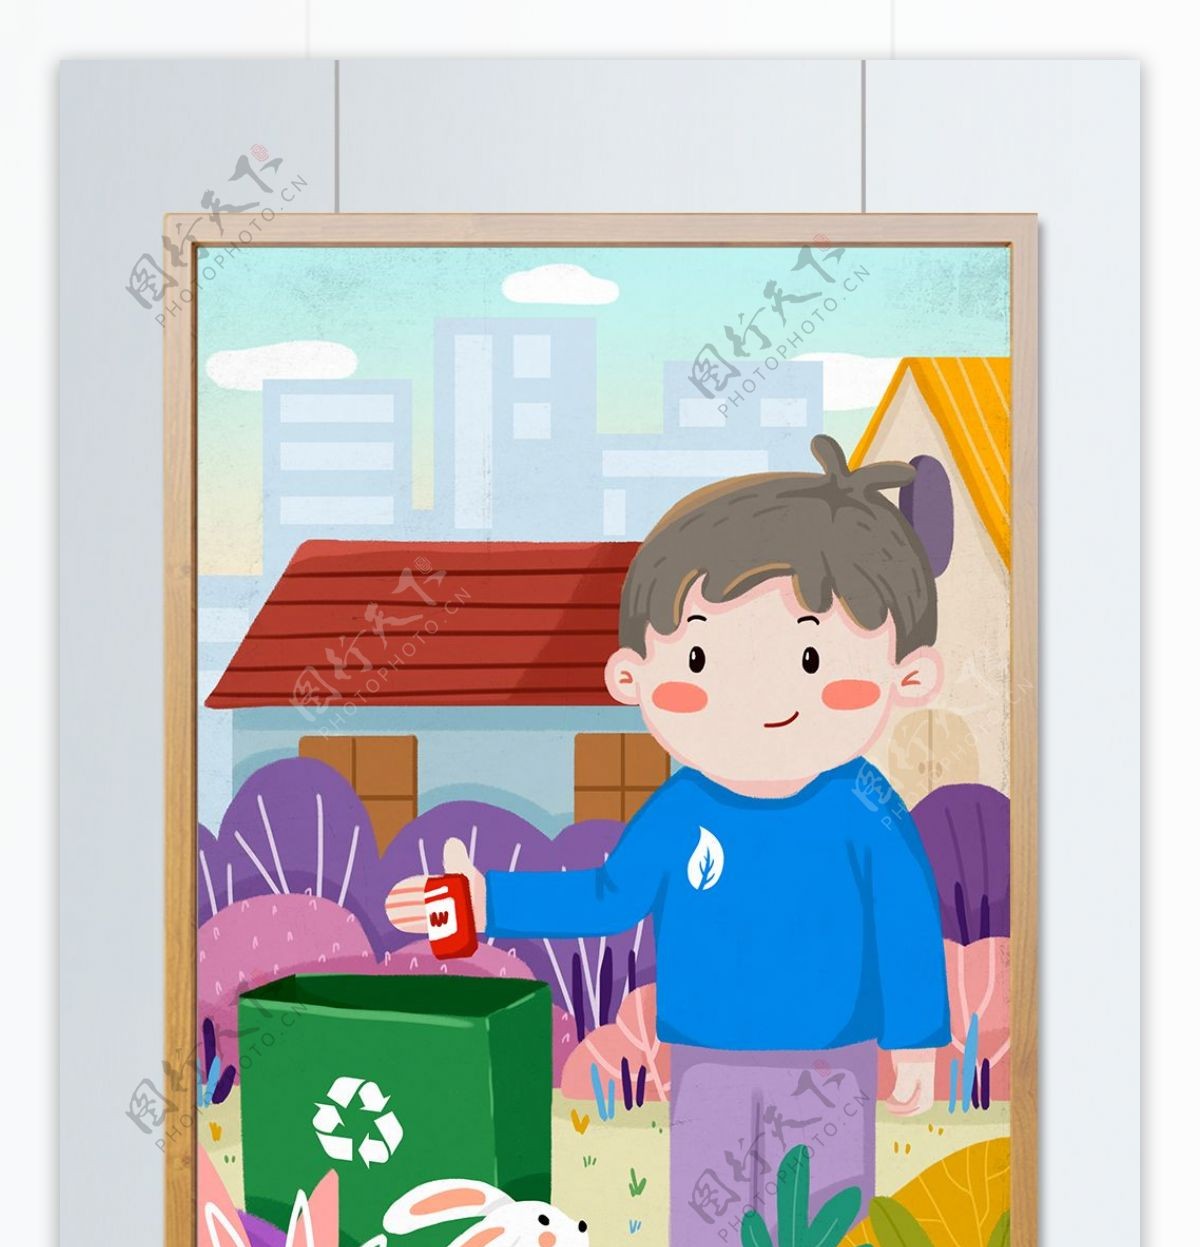 环保爱护环境男孩将垃圾扔到垃圾桶